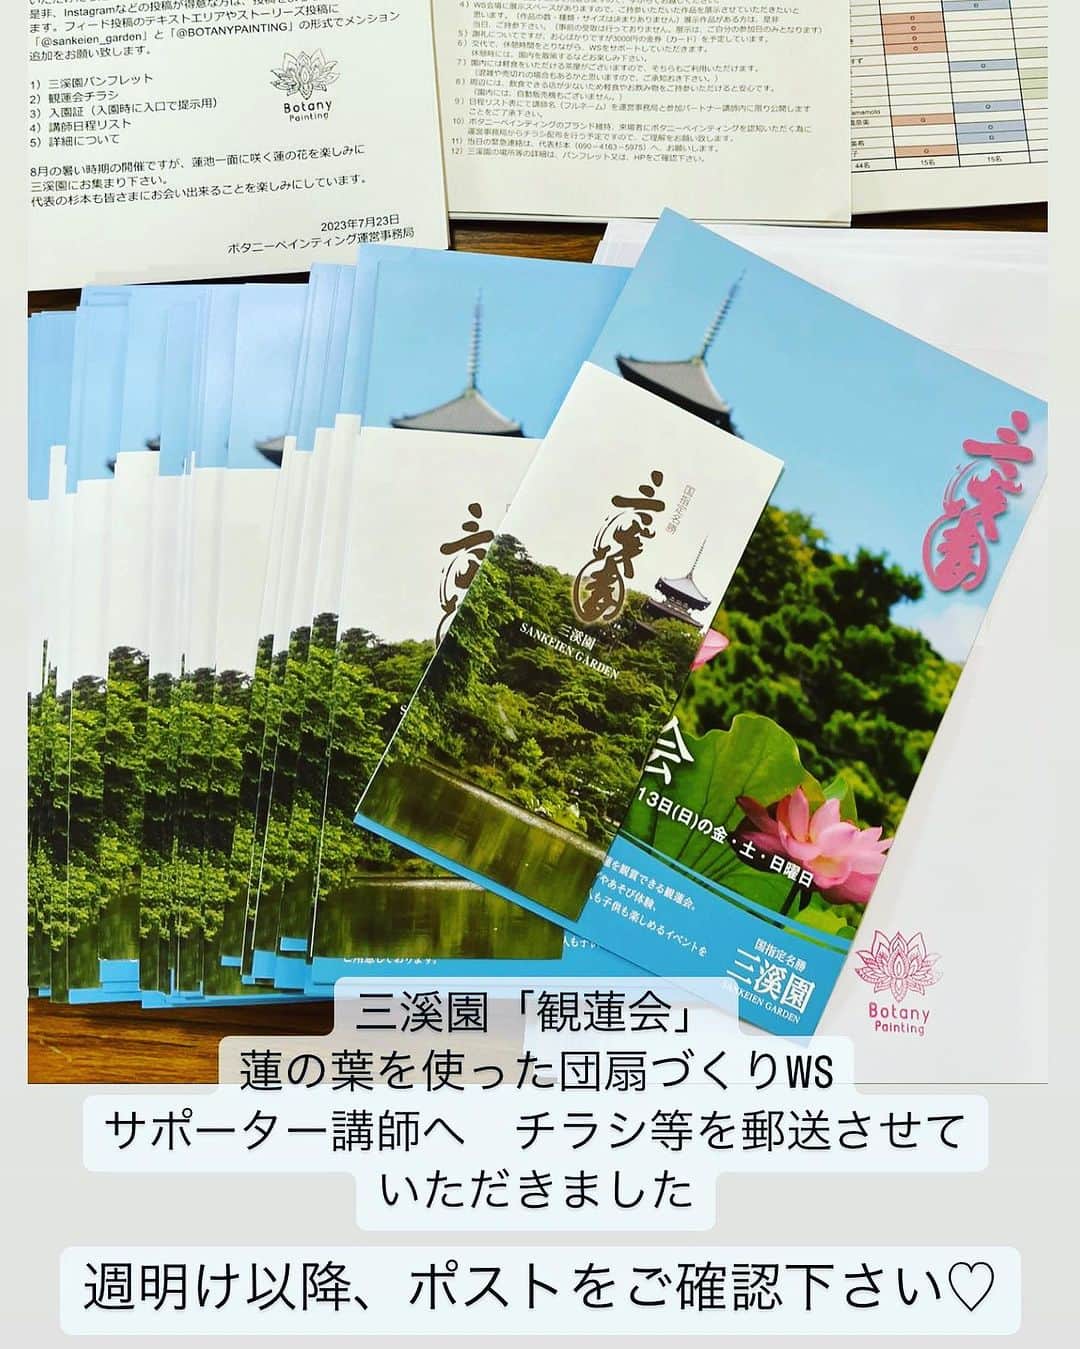 botanypaintingのインスタグラム：「2023年8月11日（祝）〜8月13日（日）の３日間 横浜・三溪園「観蓮会」にて ボタニーペインティング 「蓮の葉を使った団扇づくり」のワークショップを開催します。  ワークショップをサポートして下さるボタニーパートナー講師宛に、観蓮会のチラシ等を郵送させていただきました。 週明け以降に、ご自宅のポストに届くと思いますので、関係する講師の方は、ご確認とお受取をお願い致します。 三溪園での「蓮の葉を使った団扇づくり」のワークショップ参加者のお申し込みを受付中 夏休みに親子でのご参加もお待ちしています。 お申し込みは、ボタニーペインティング公式ホームページ ボタニーペインティング（検索） #ボタニーペインティング #botanypainting  #三溪園 @sankeien_garden」